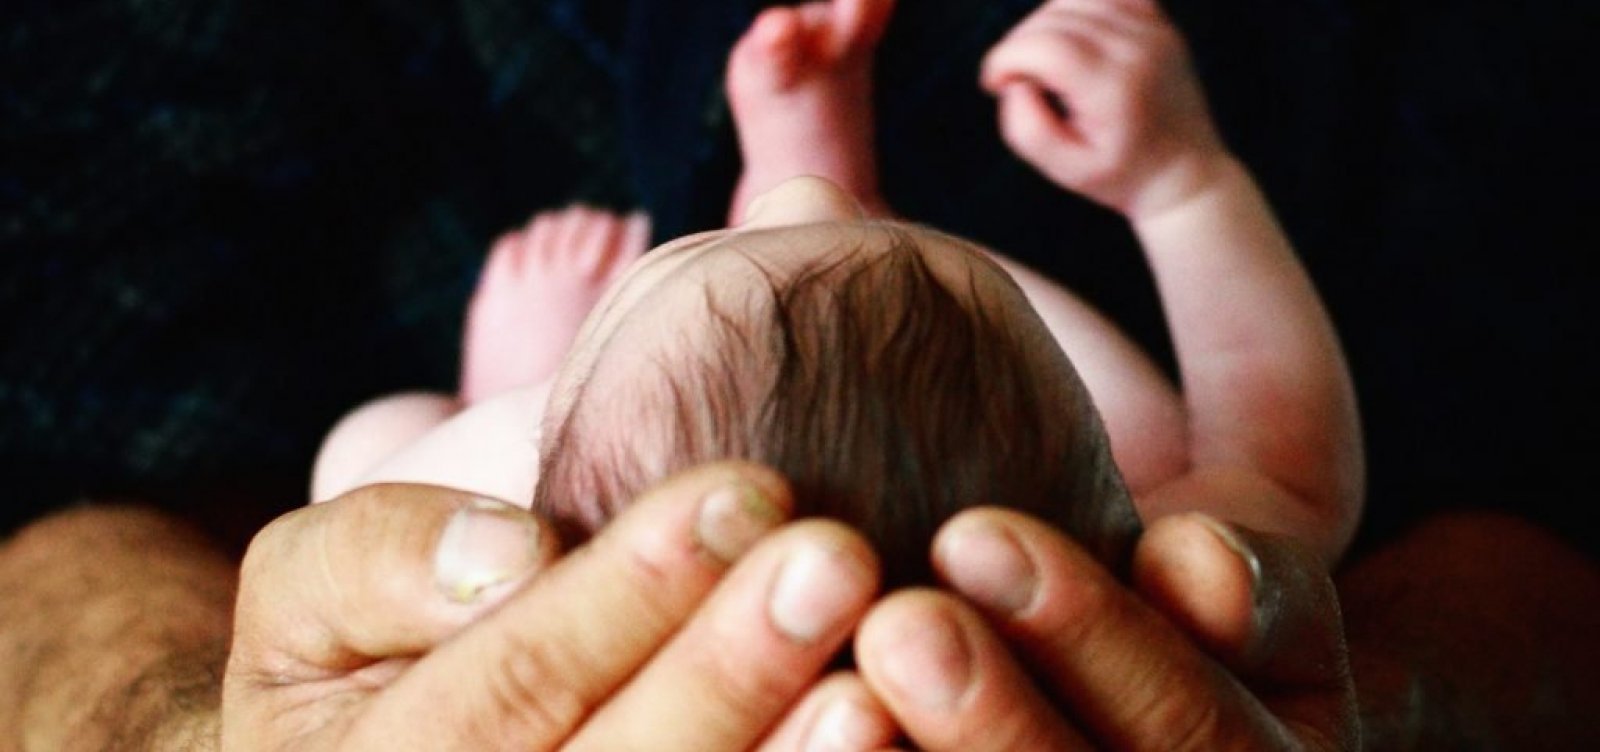 Defensoria cria portaria voltada à atenção humanizada para quem quer encaminhar bebês para adoção